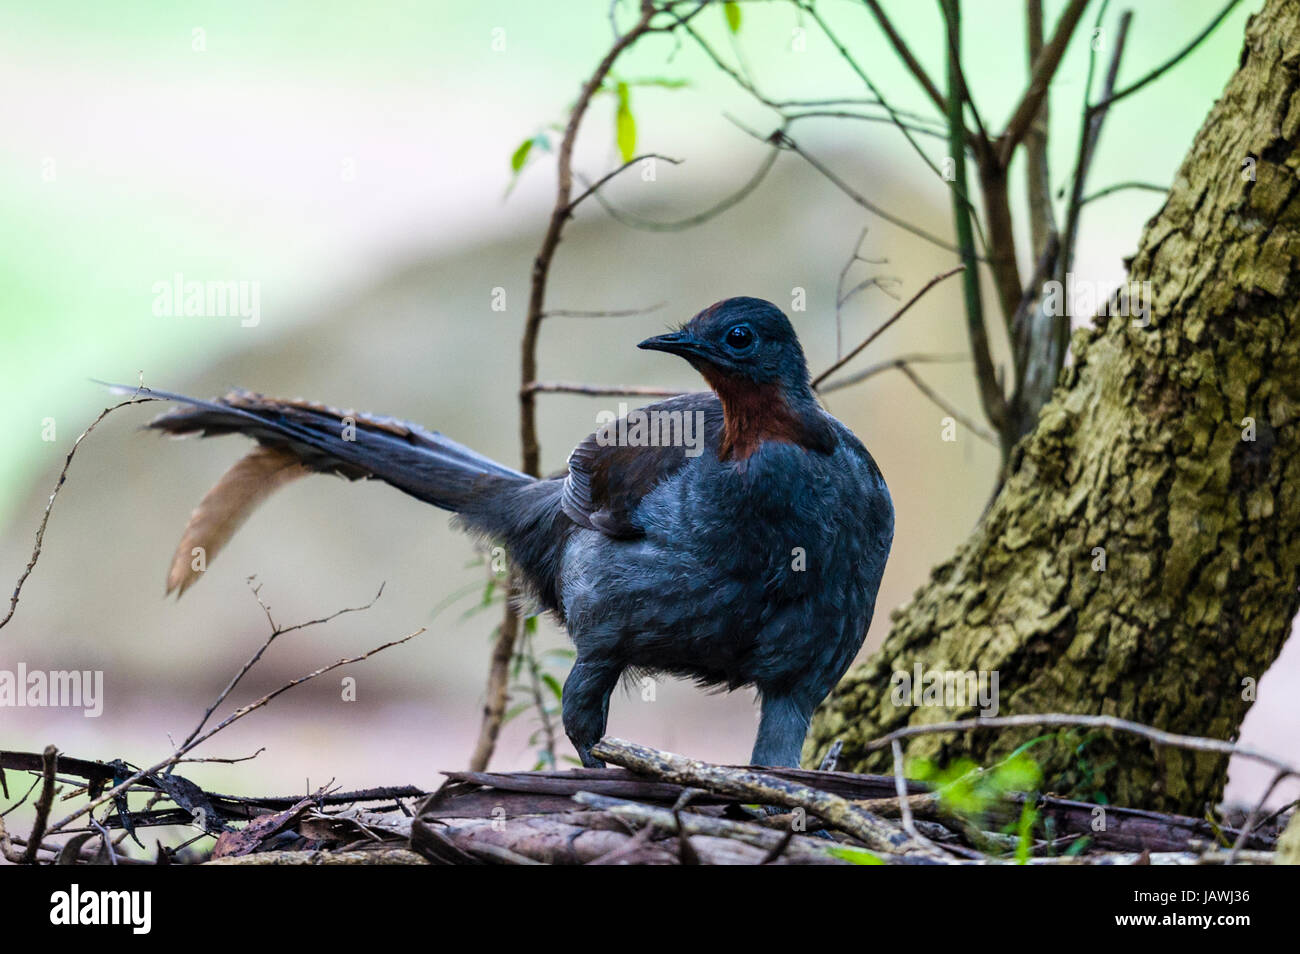 A Superb Lyrebird foraging in the forest understorey. Stock Photo